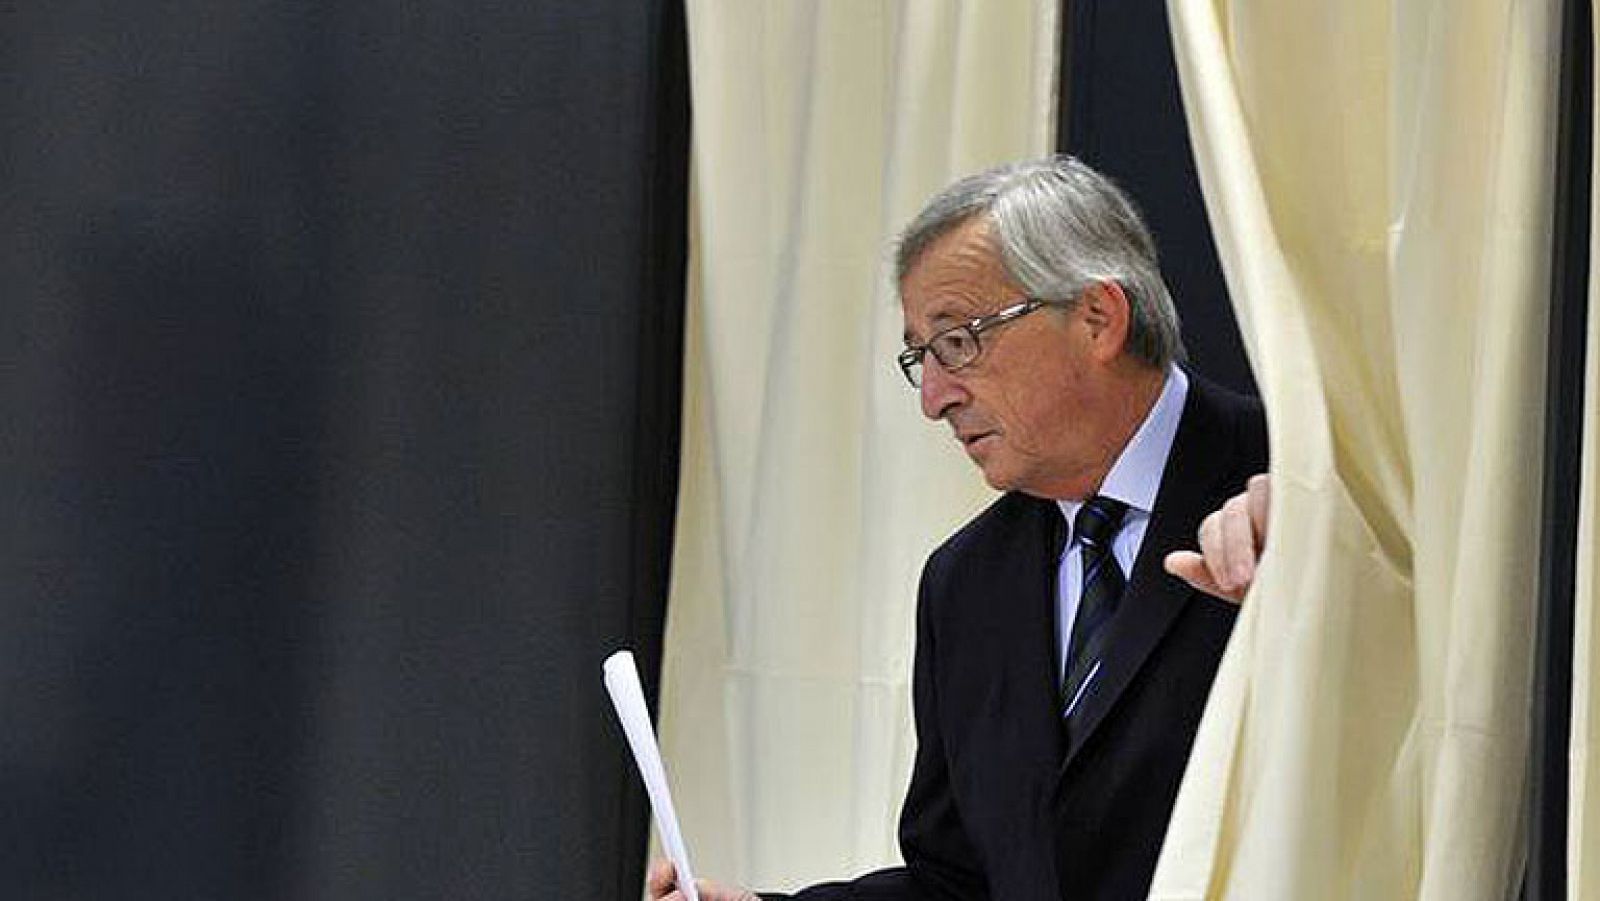  El partido de Juncker vuelve a ganar en Luxemburgo, pero pierde apoyos